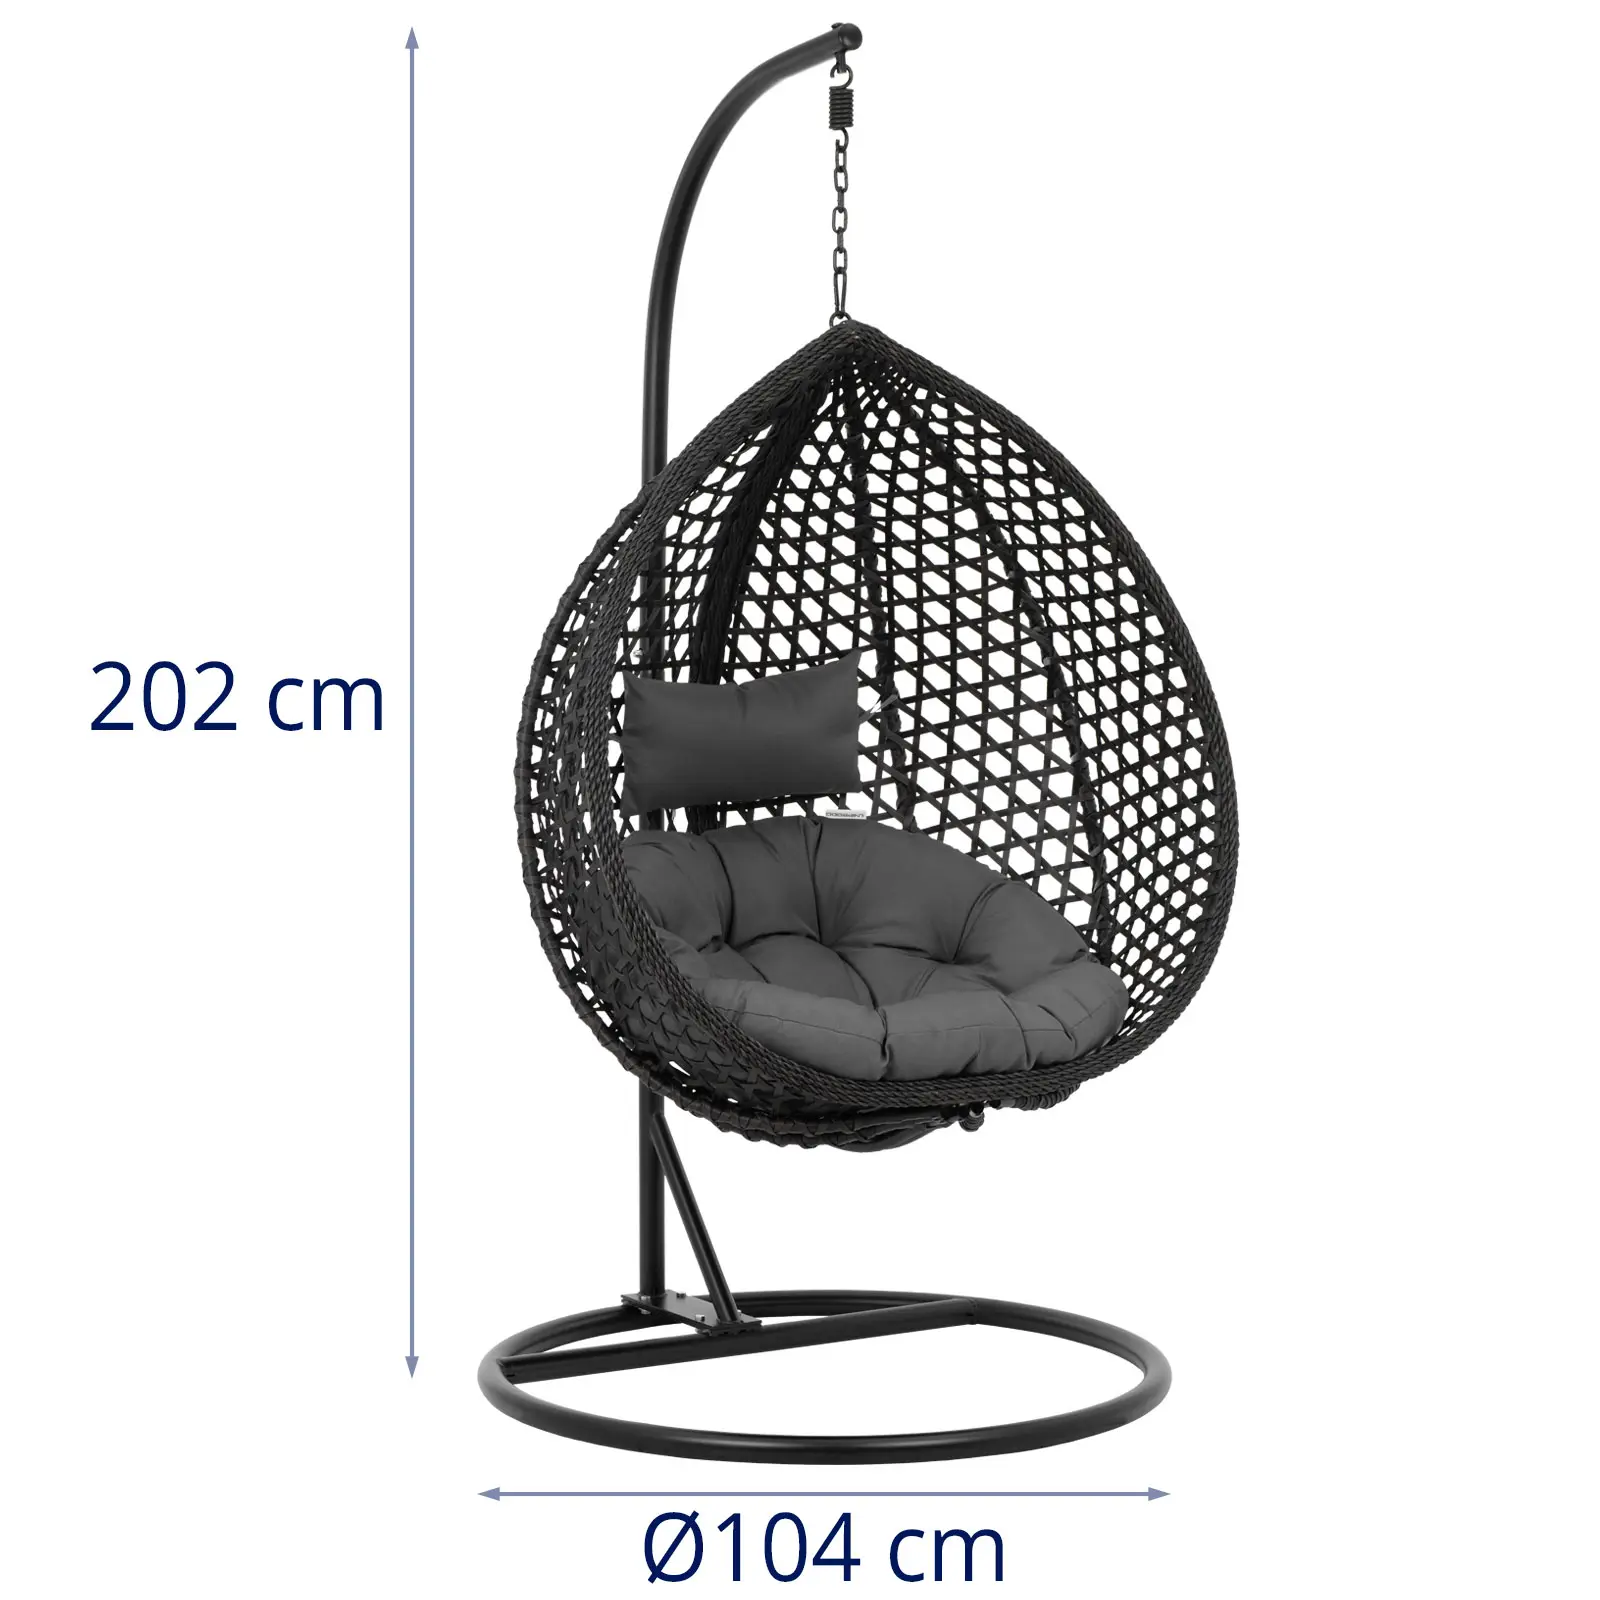 Κρεμαστή καρέκλα εξωτερικού χώρου με βάση - πτυσσόμενο κάθισμα - μαύρο/γκρι - σχήμα σταγόνας